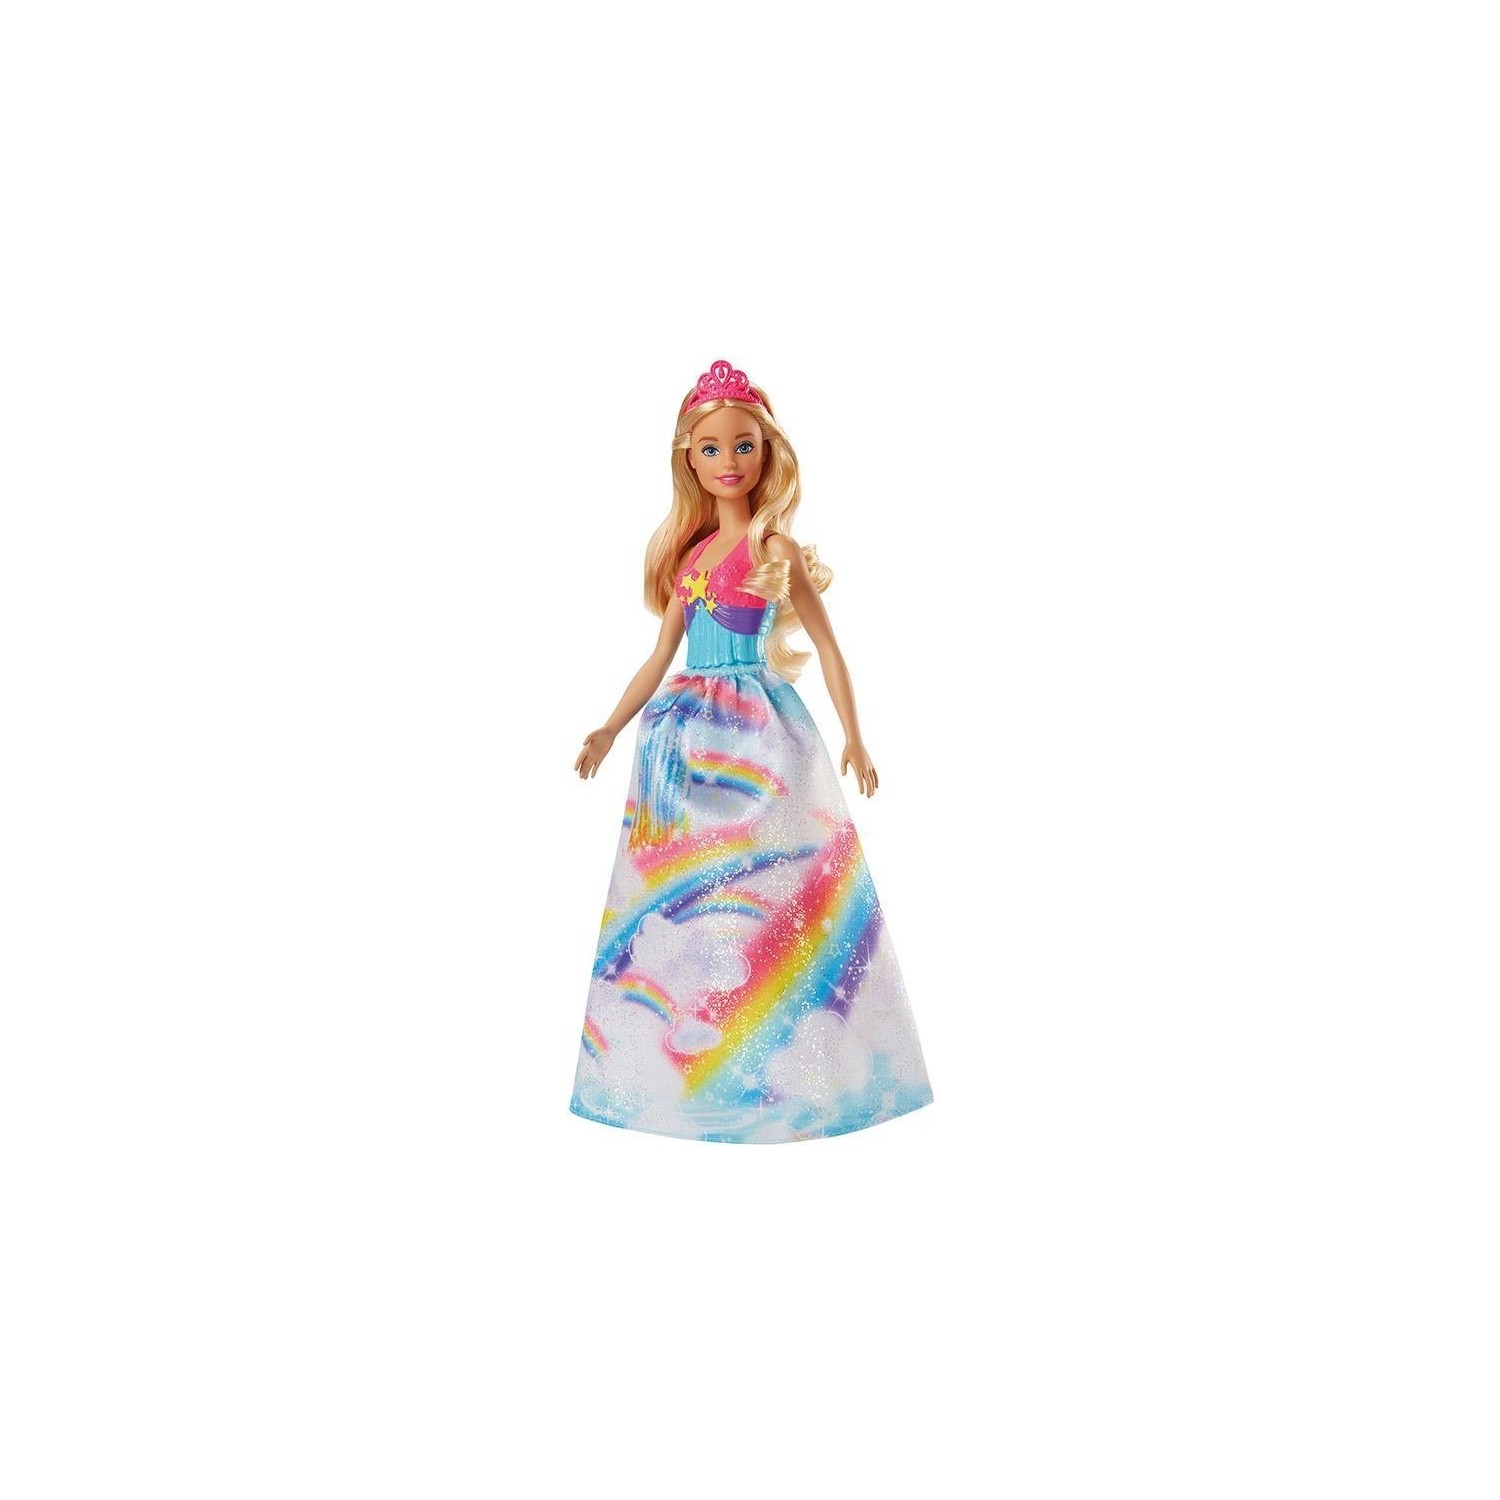 Кукла Barbie Dreamtopia Princess Dolls Fjc94 игровой набор barbie dreamtopia tea party